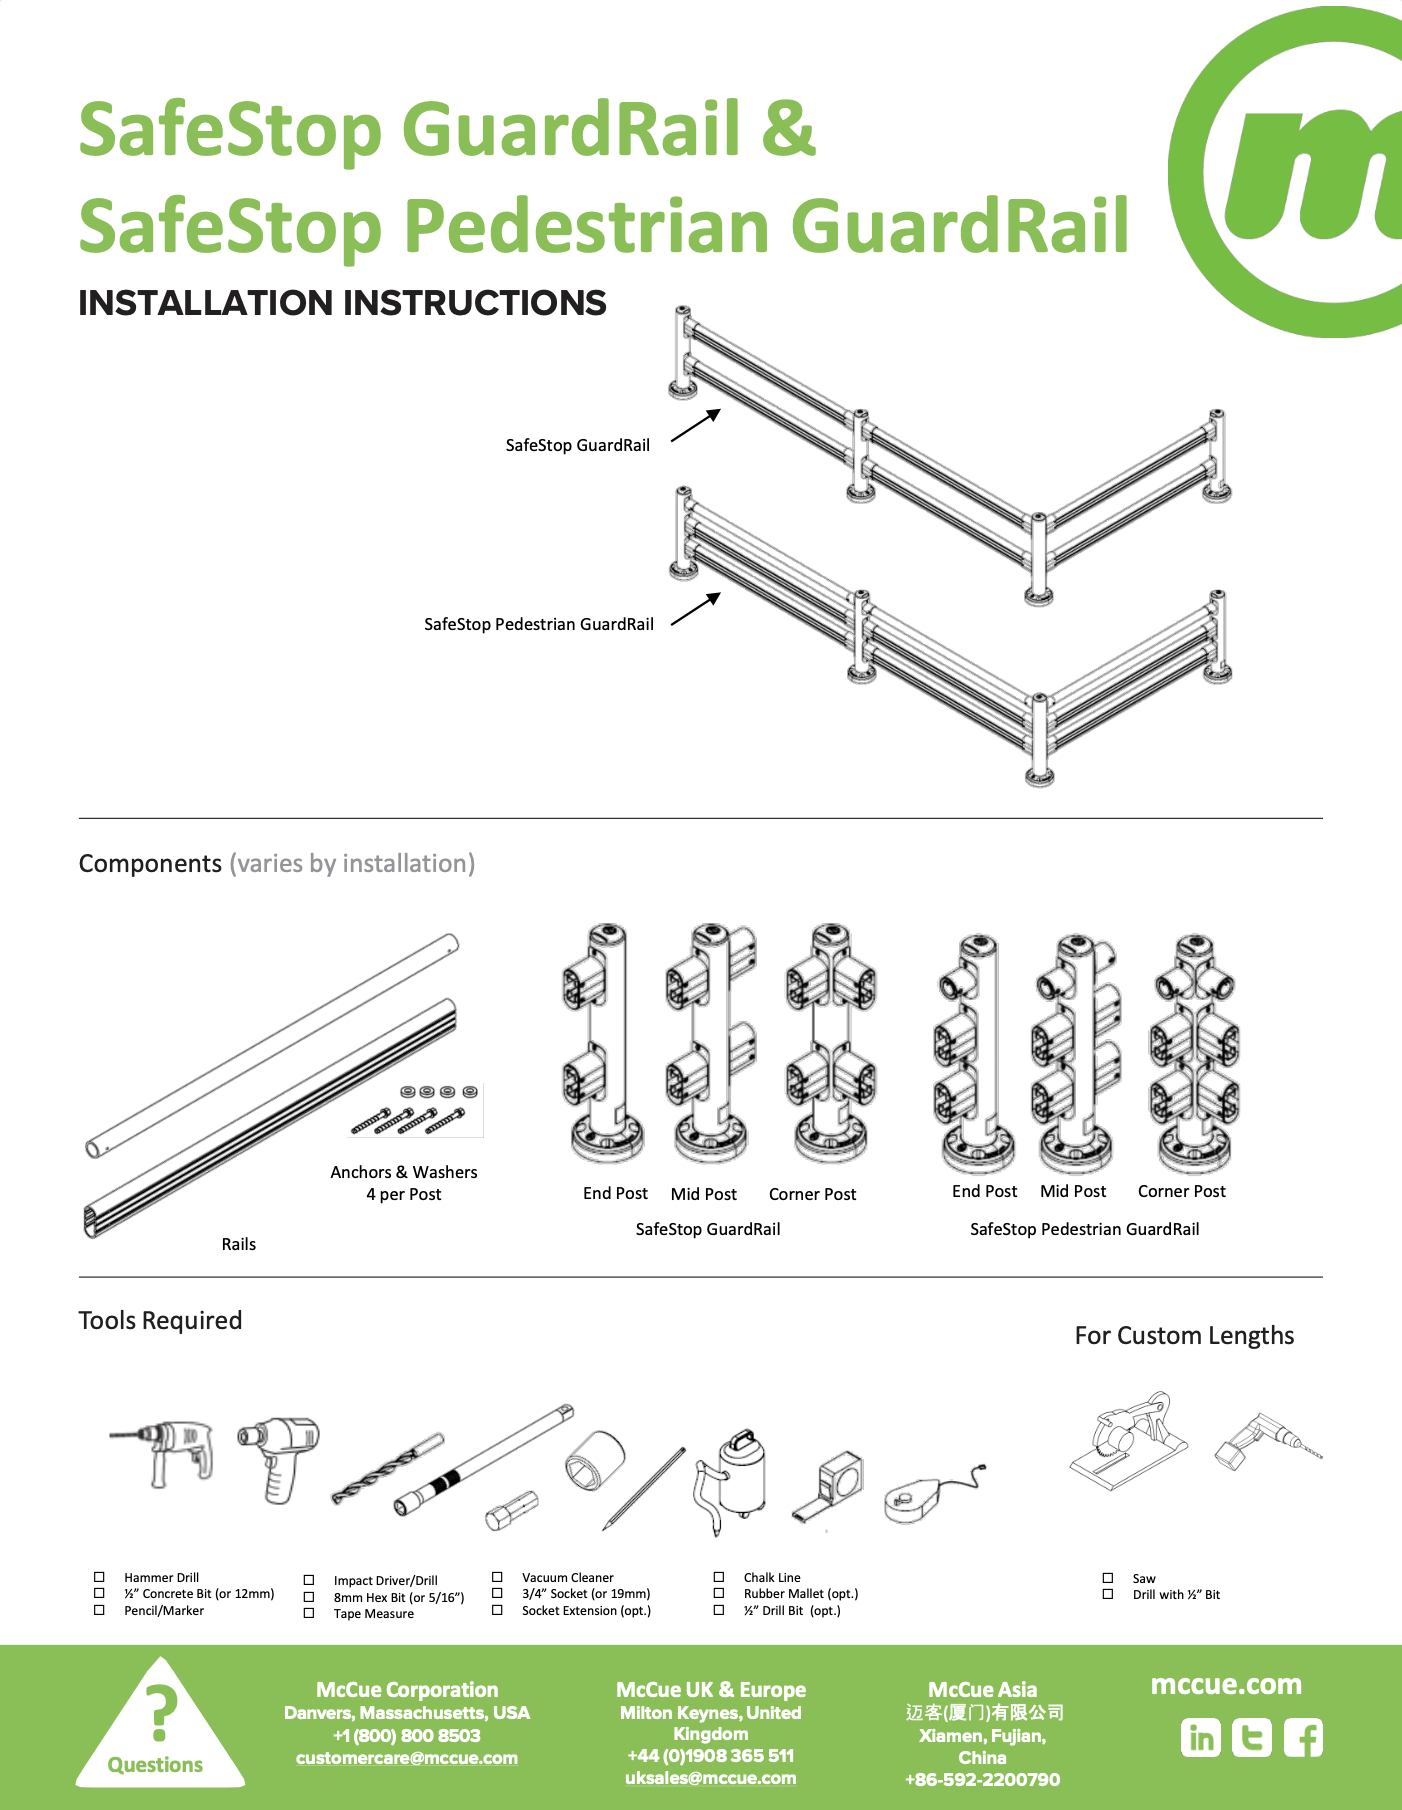 SafeStop GuardRail Installation Instructions